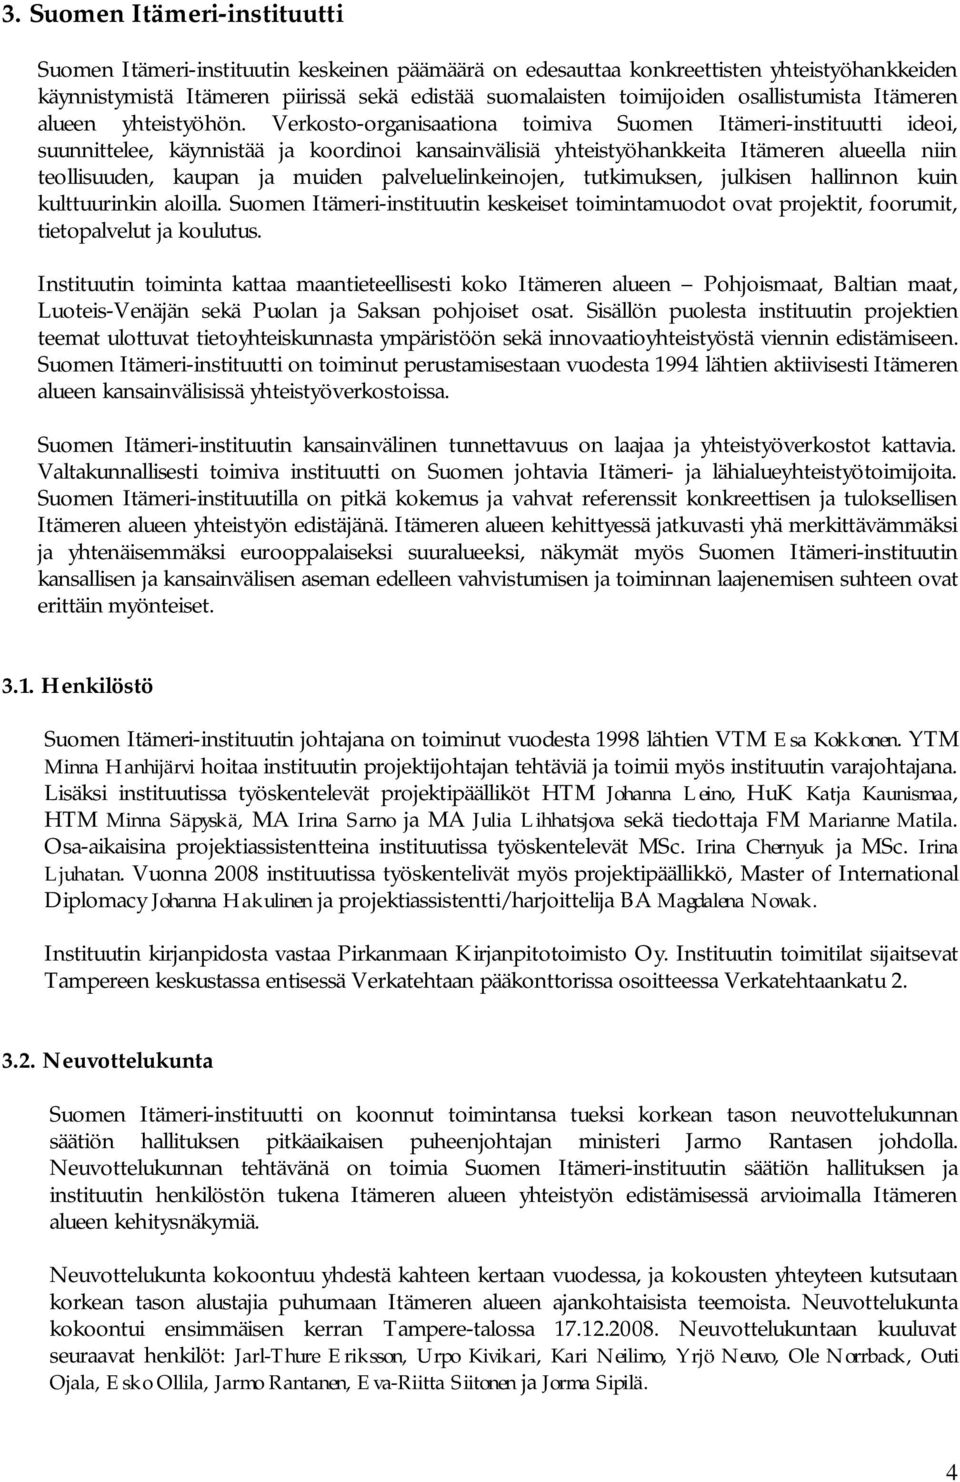 Verkosto-organisaationa toimiva Suomen Itämeri-instituutti ideoi, suunnittelee, käynnistää ja koordinoi kansainvälisiä yhteistyöhankkeita Itämeren alueella niin teollisuuden, kaupan ja muiden